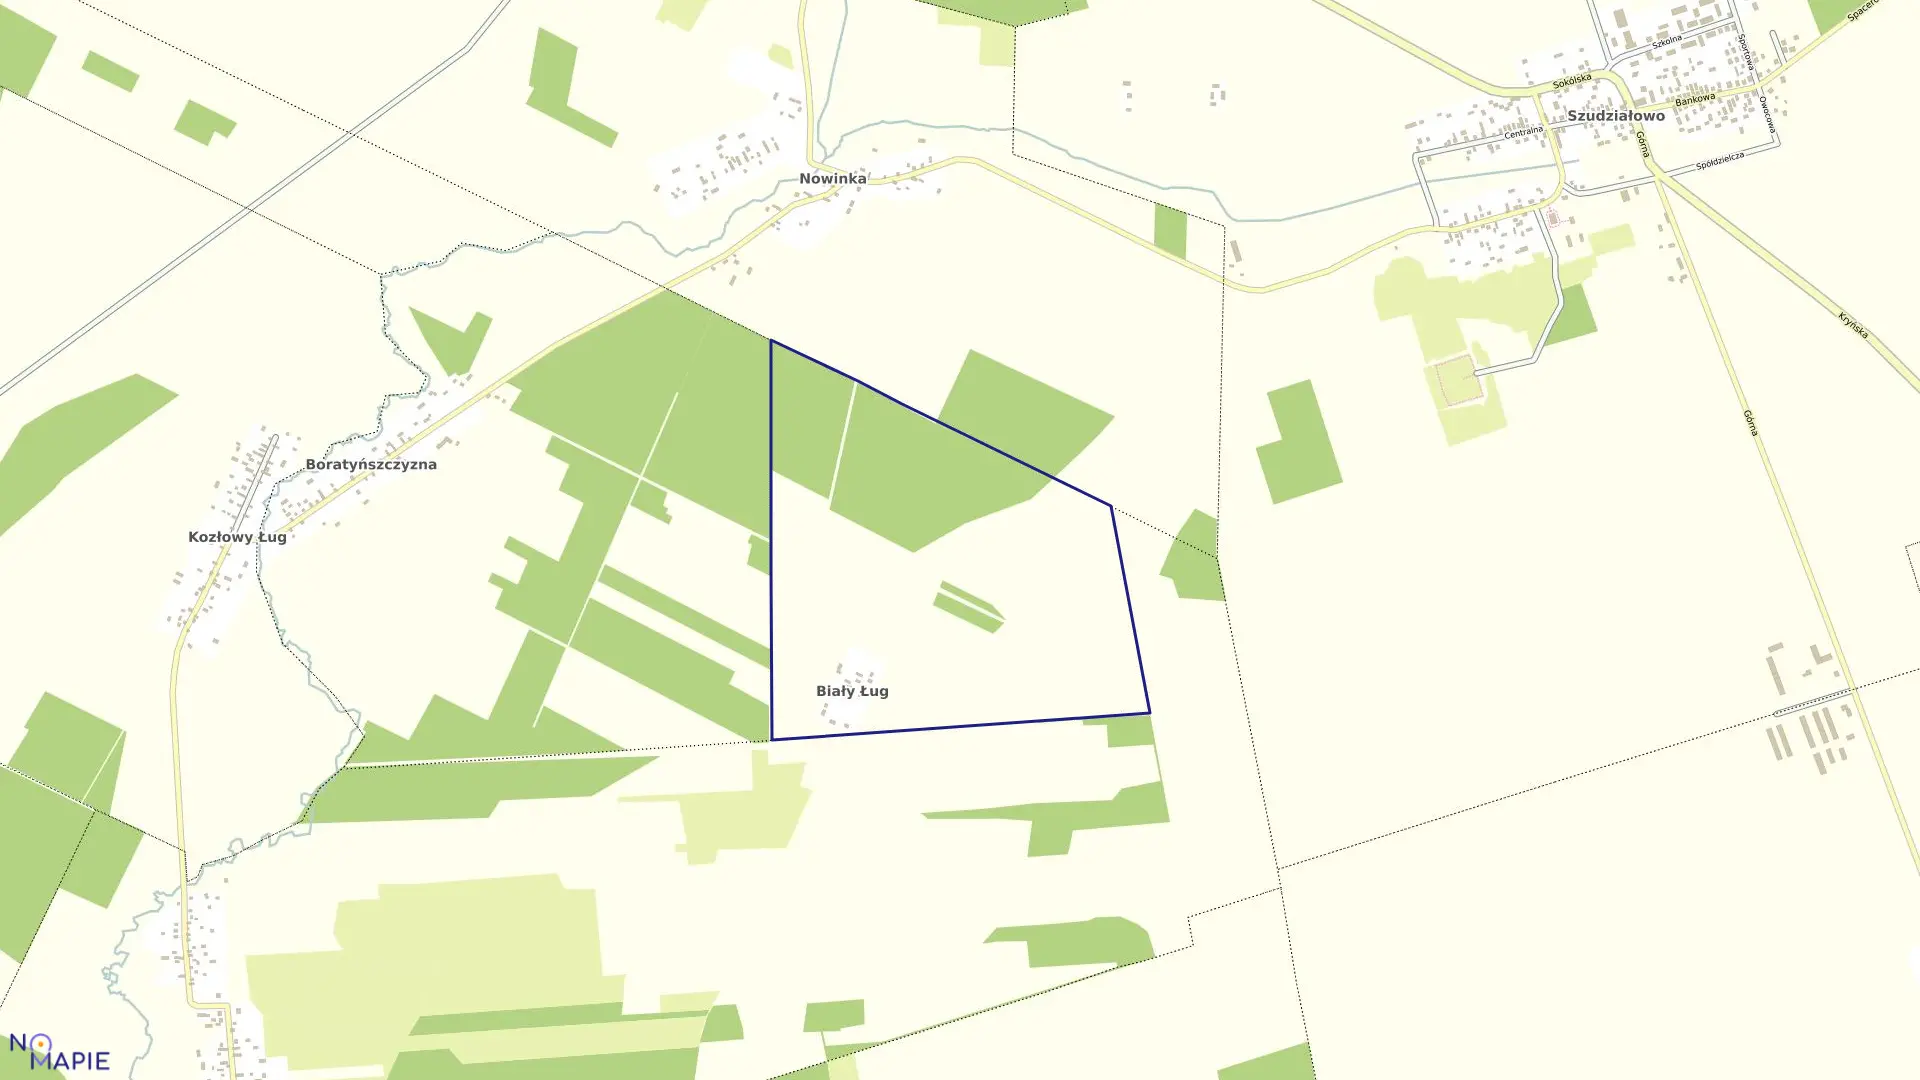 Mapa obrębu BIAŁY ŁUG w gminie Szudziałowo